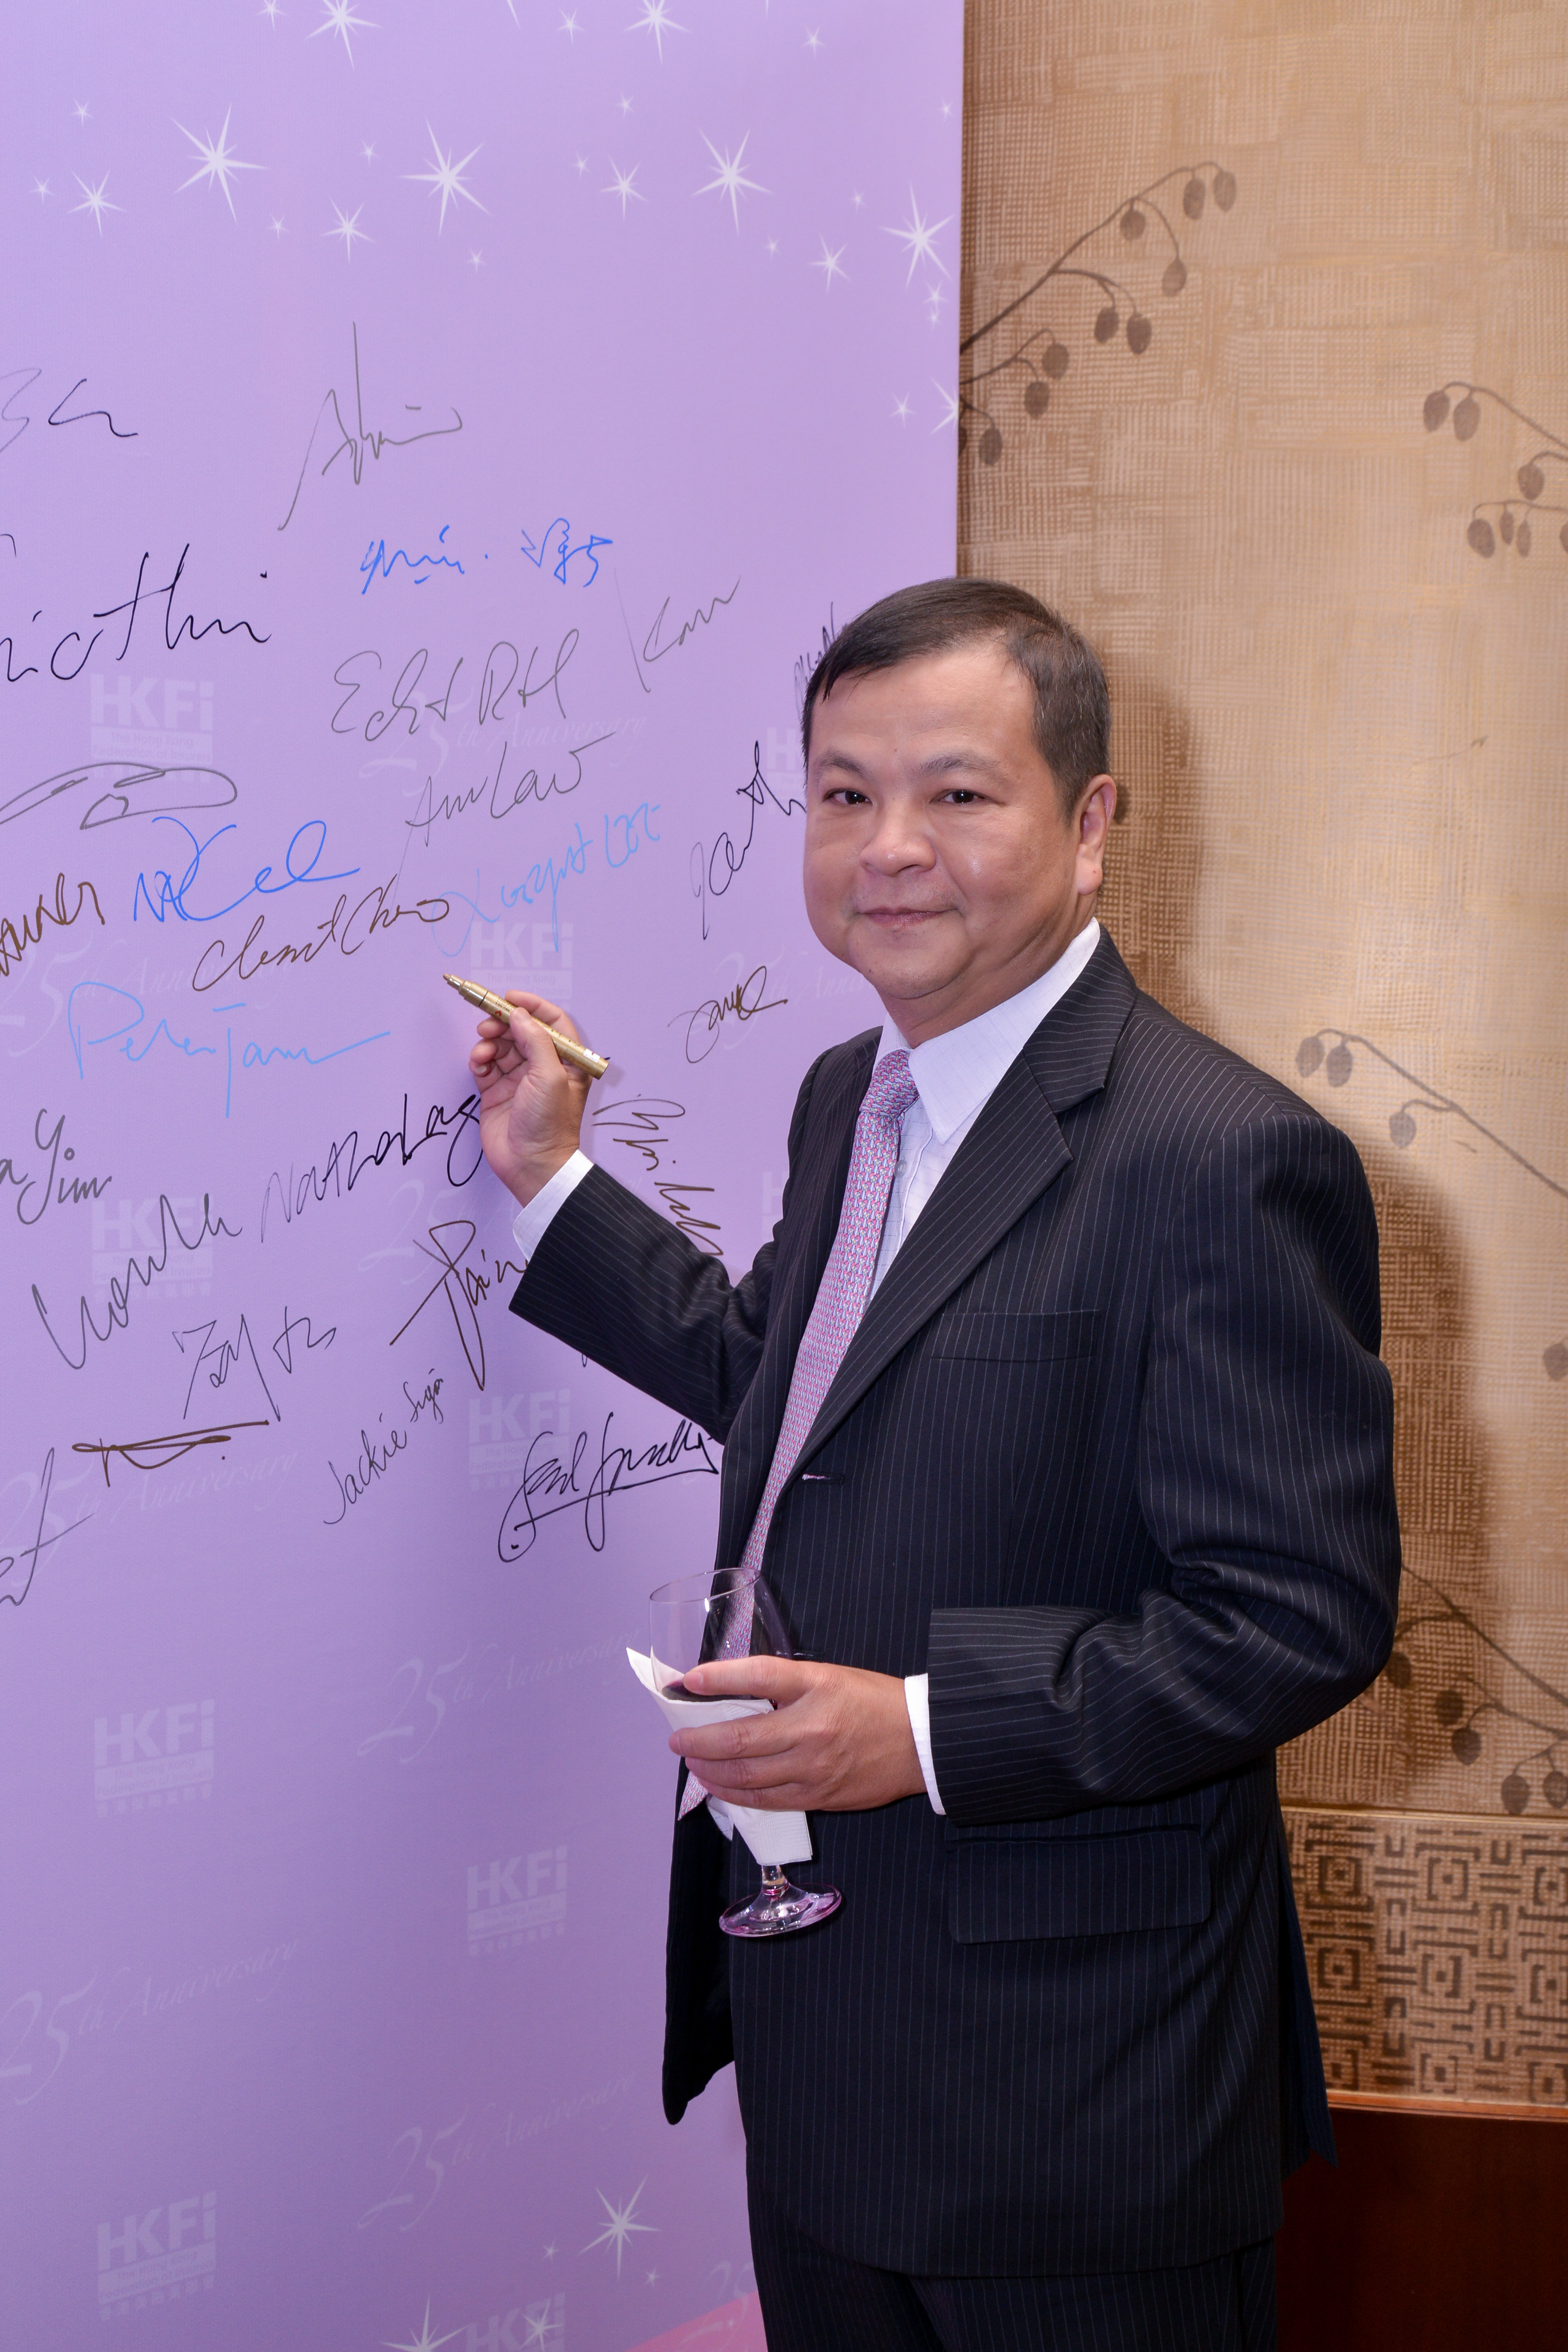 HKFI Celebrating 25 Years – Signing Board (1)